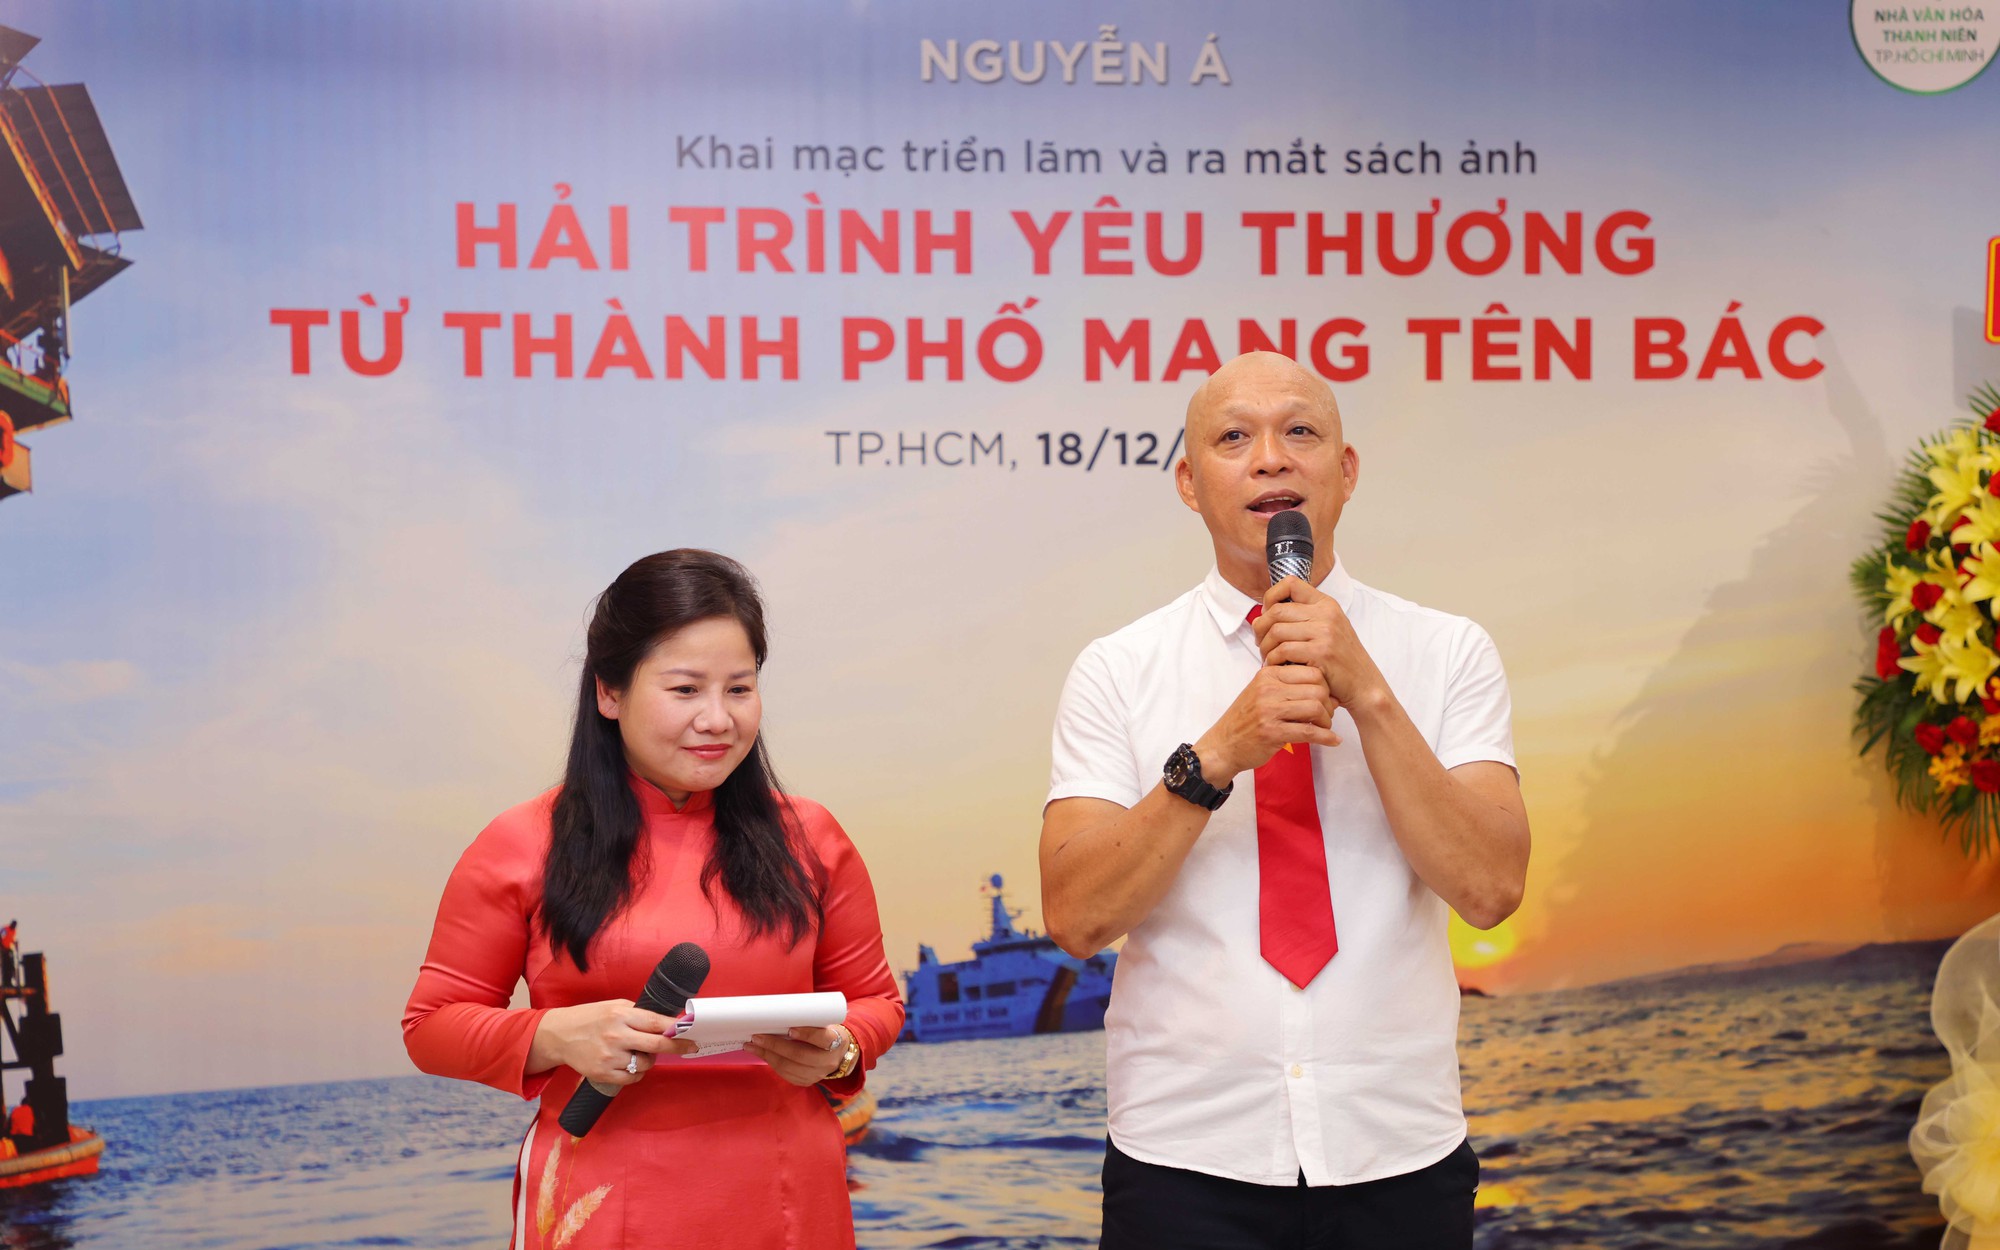 Nhiếp ảnh gia Nguyễn Á ra mắt sách ảnh “Hải trình yêu thương từ thành phố mang tên Bác”